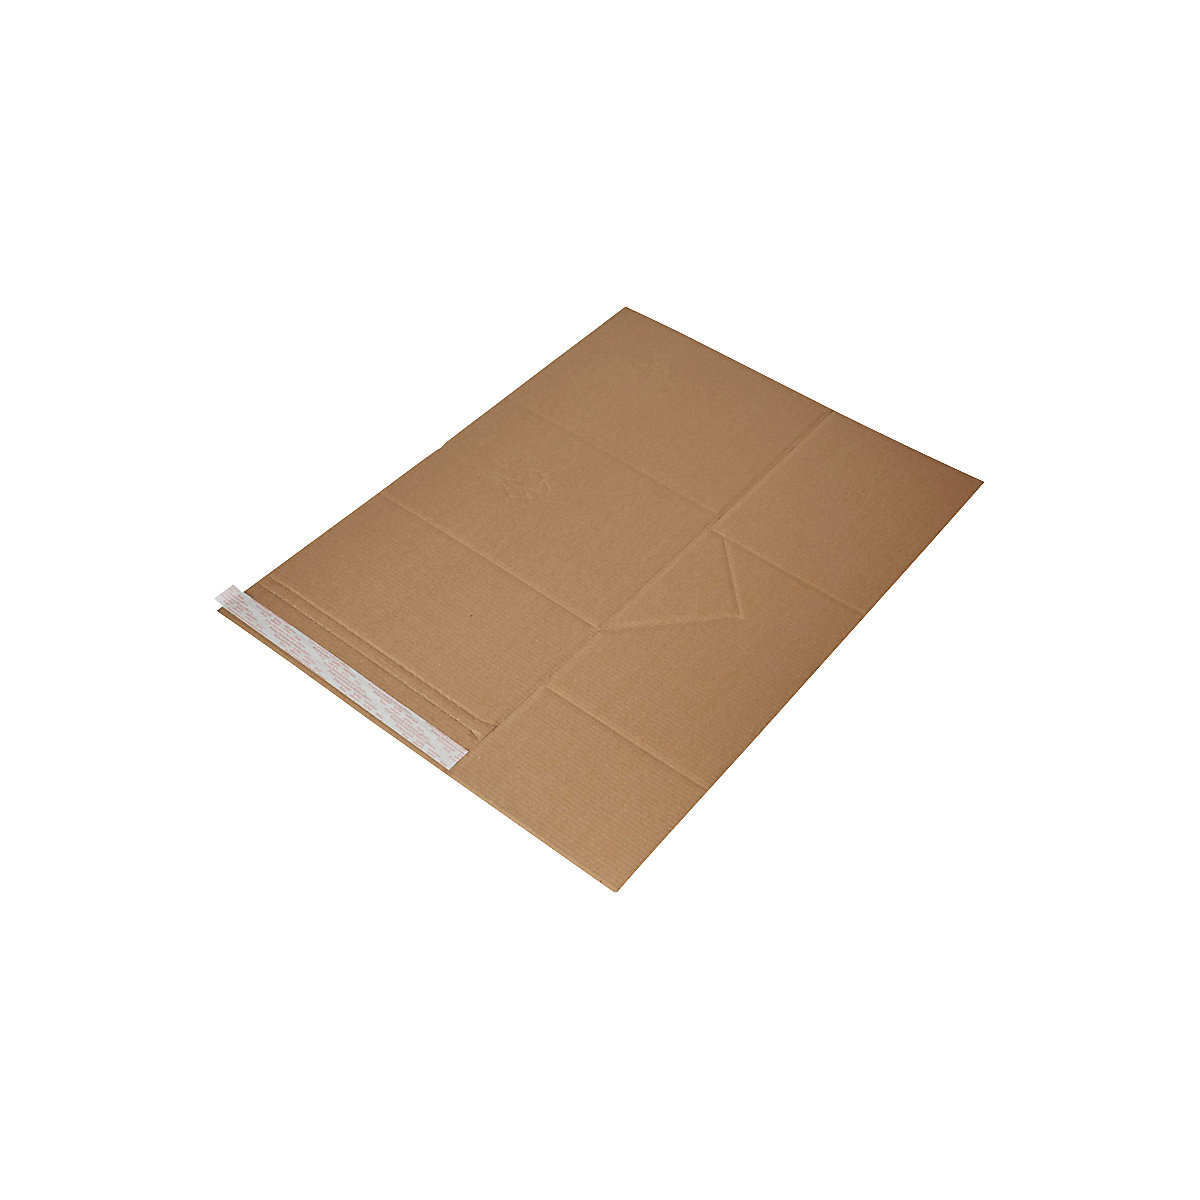 Imballaggio universale Drehfix – flow, con chiusura autoadesiva, lungh. x largh. 305 x 230 mm, a partire da 300 pz.-3